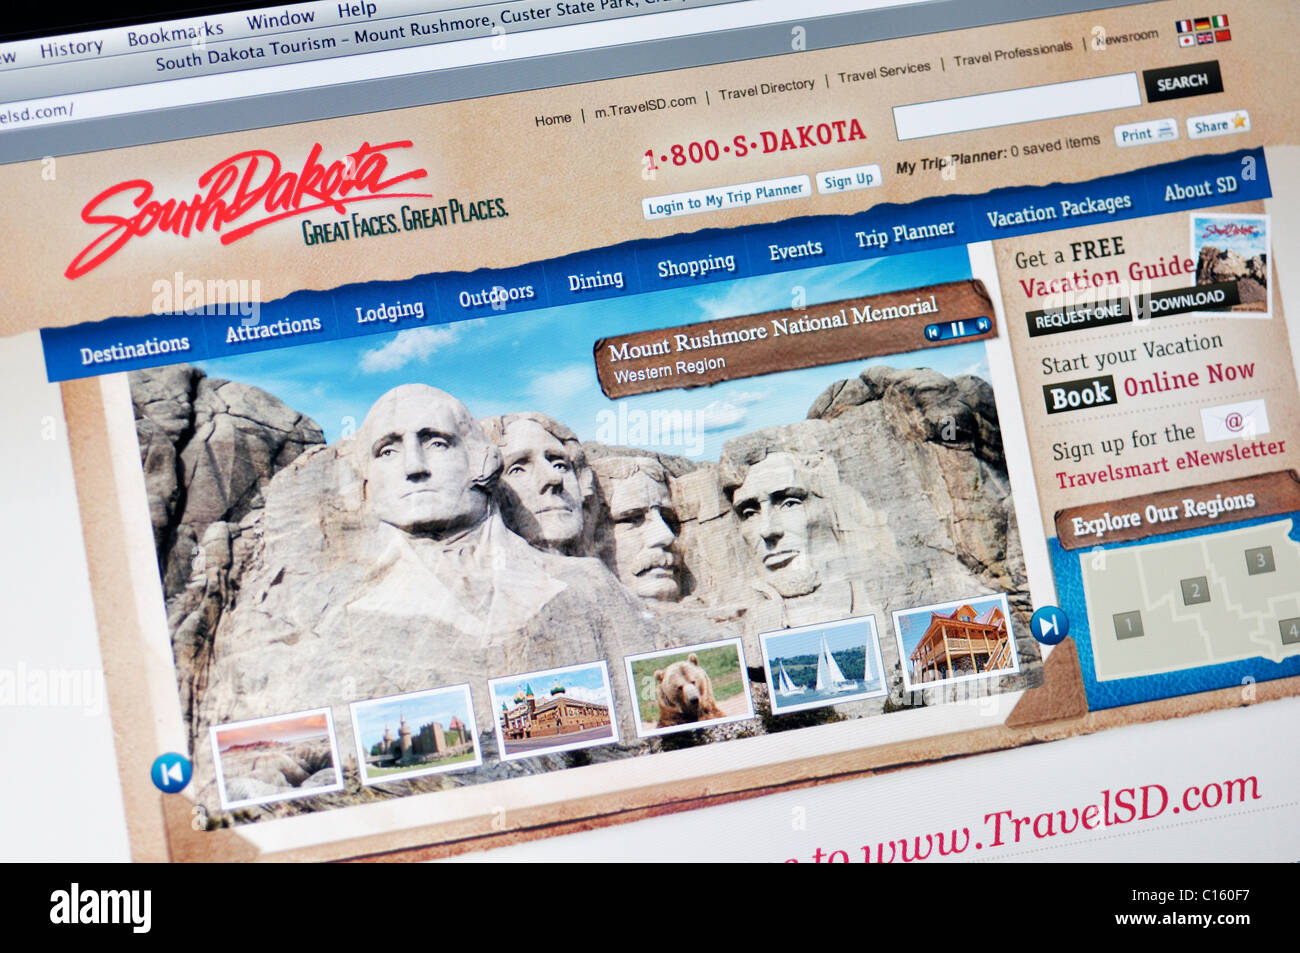 south dakota tourism website